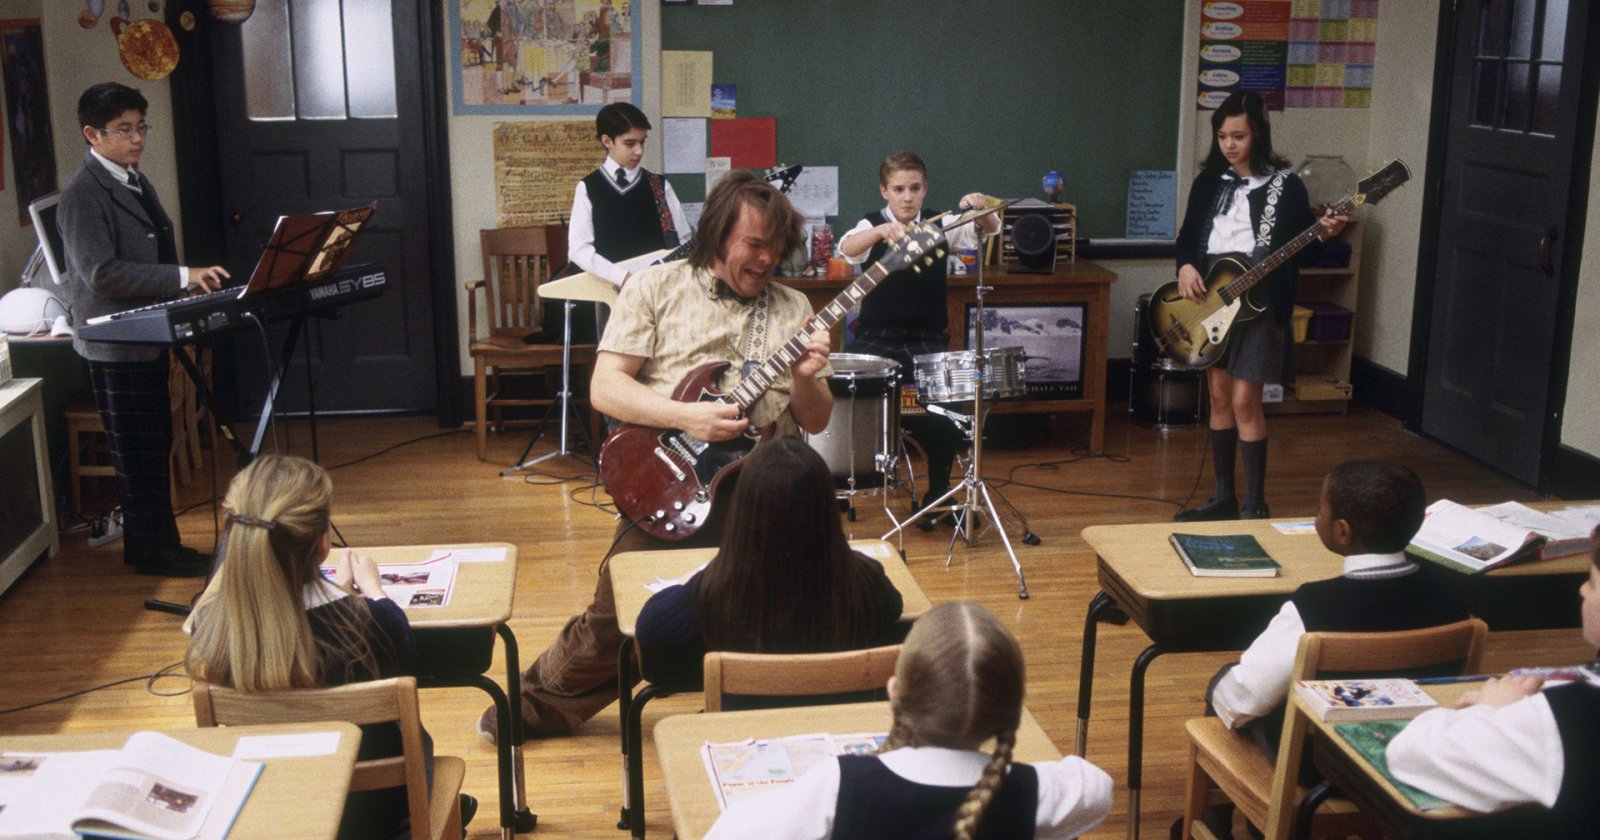 อดีตนักแสดงเด็ก ‘School of Rock’ เล่าประสบการณ์หลังหนังฉาย ถูกบูลลี-เป็นตัวประหลาด-สุขภาพจิตพัง